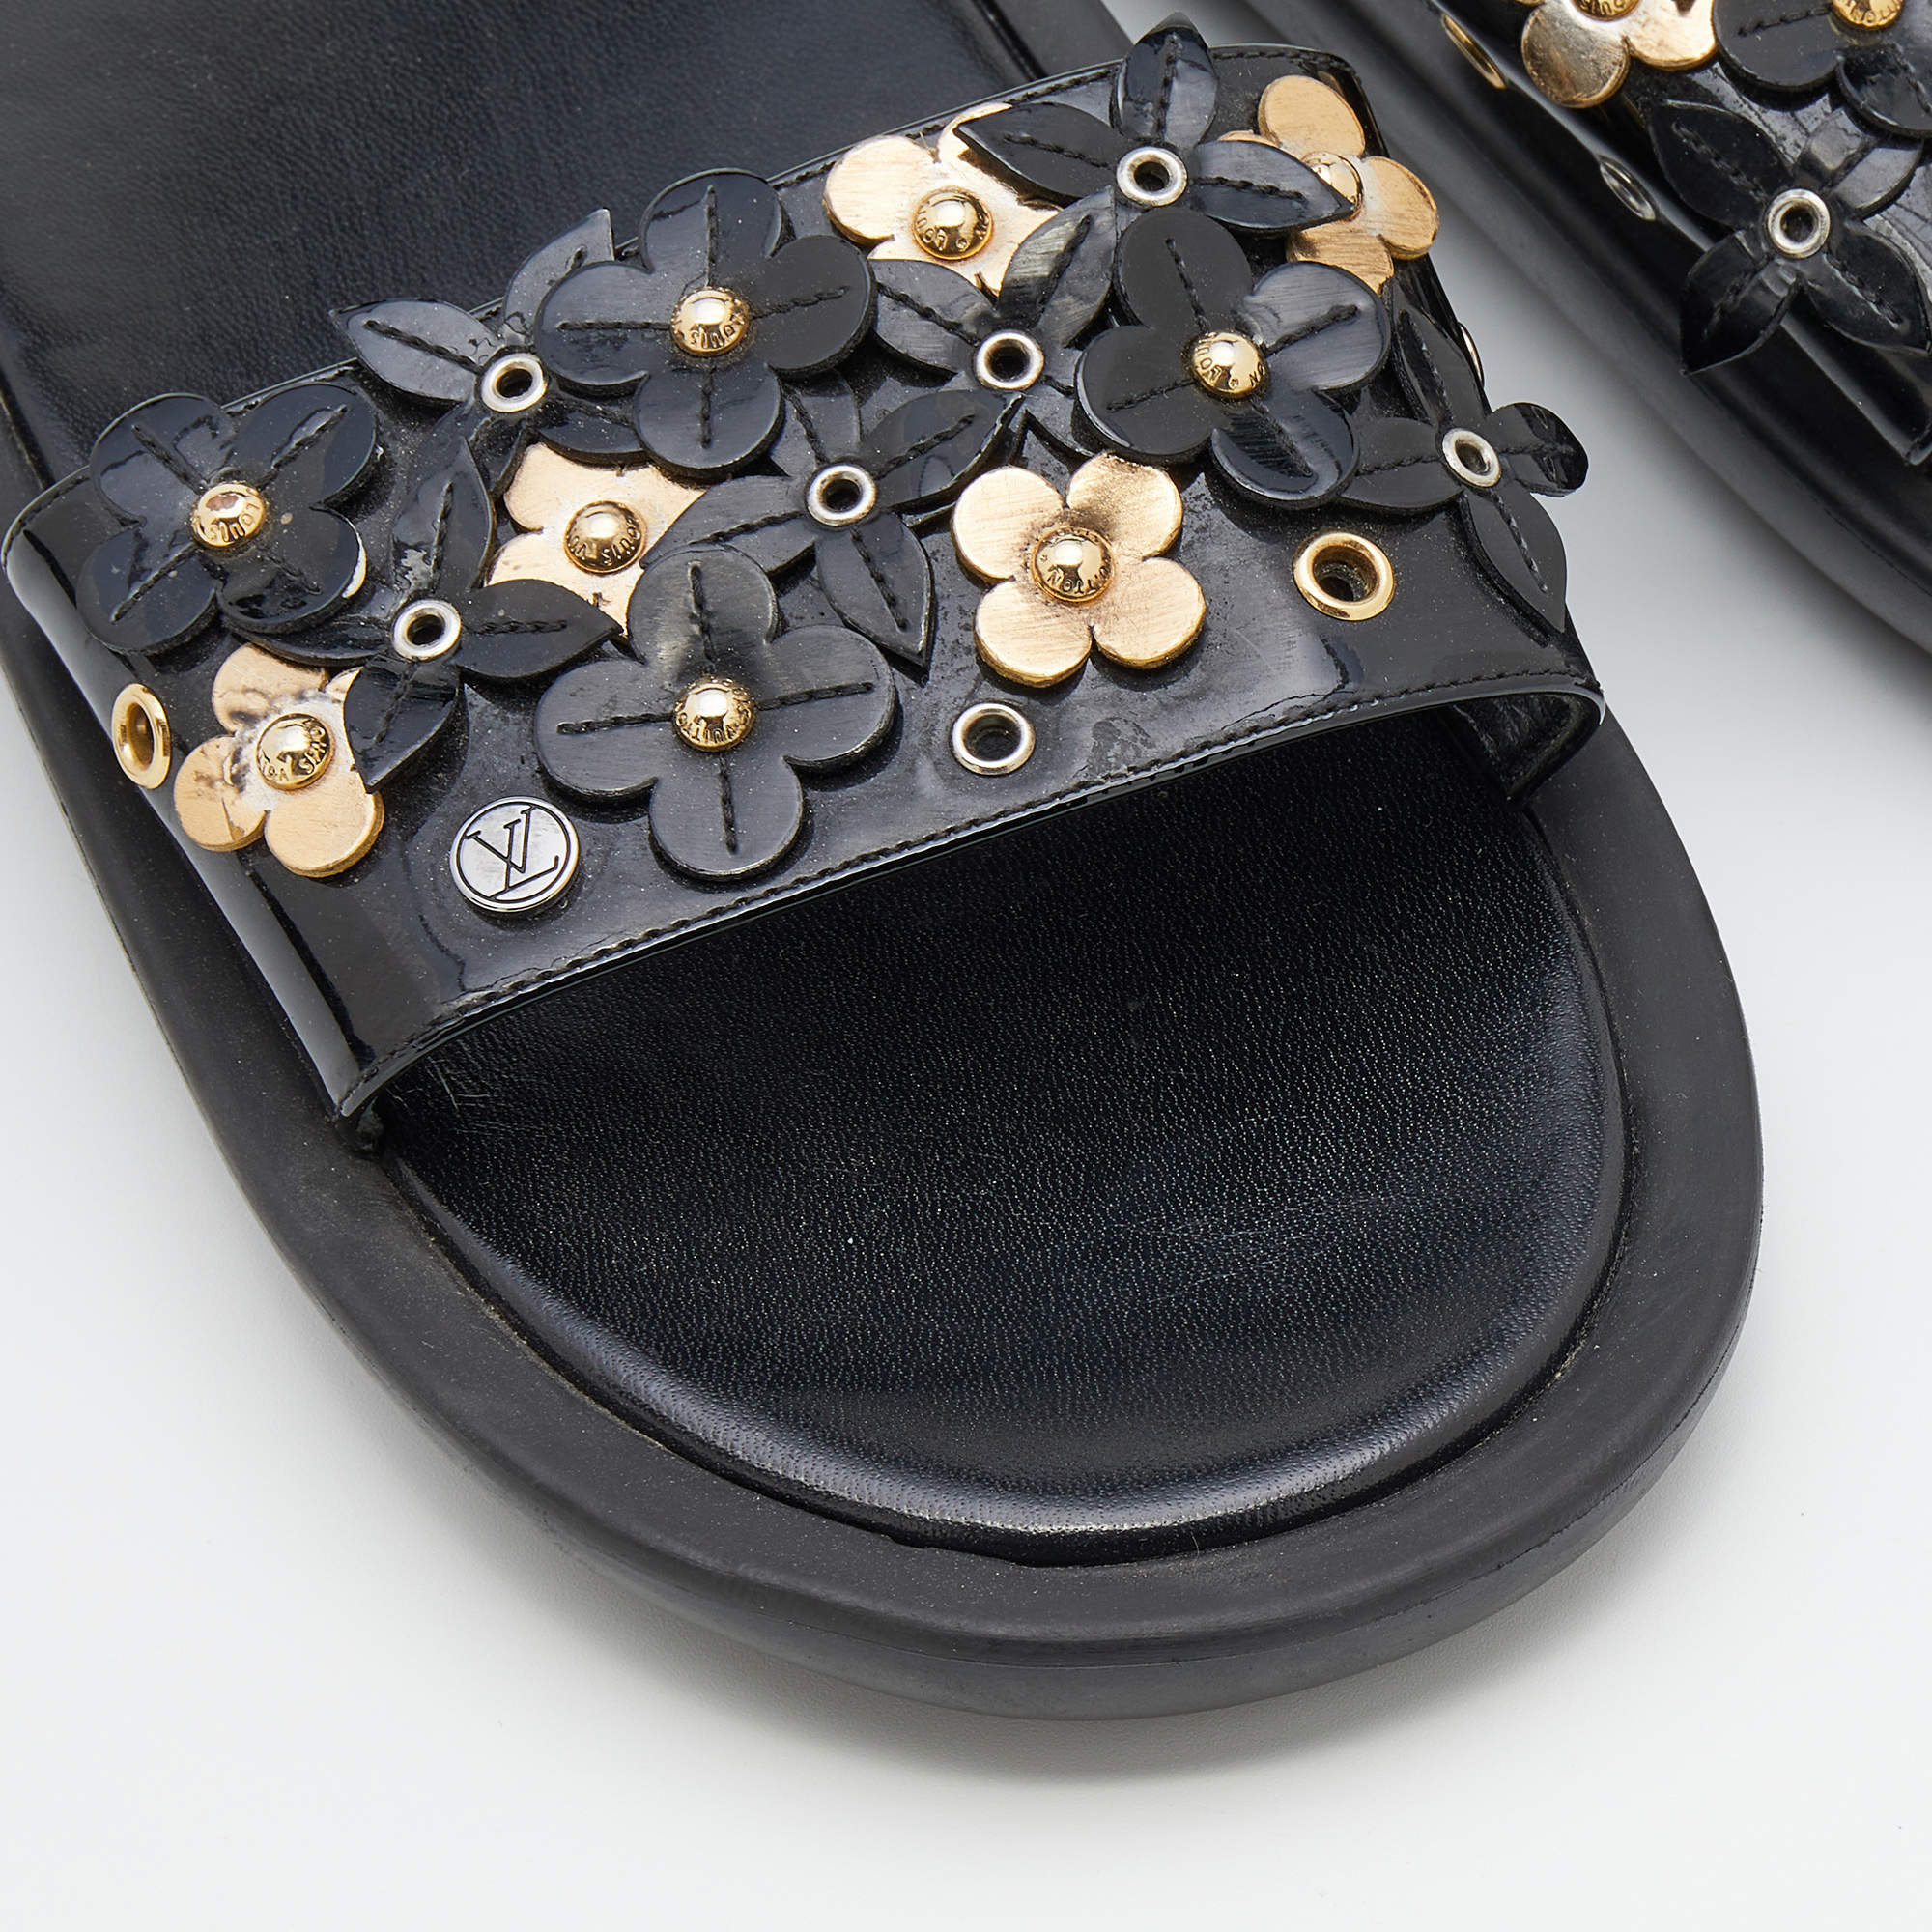 Louis Vuitton Leather Applique Embellished Platform Slide Sandals